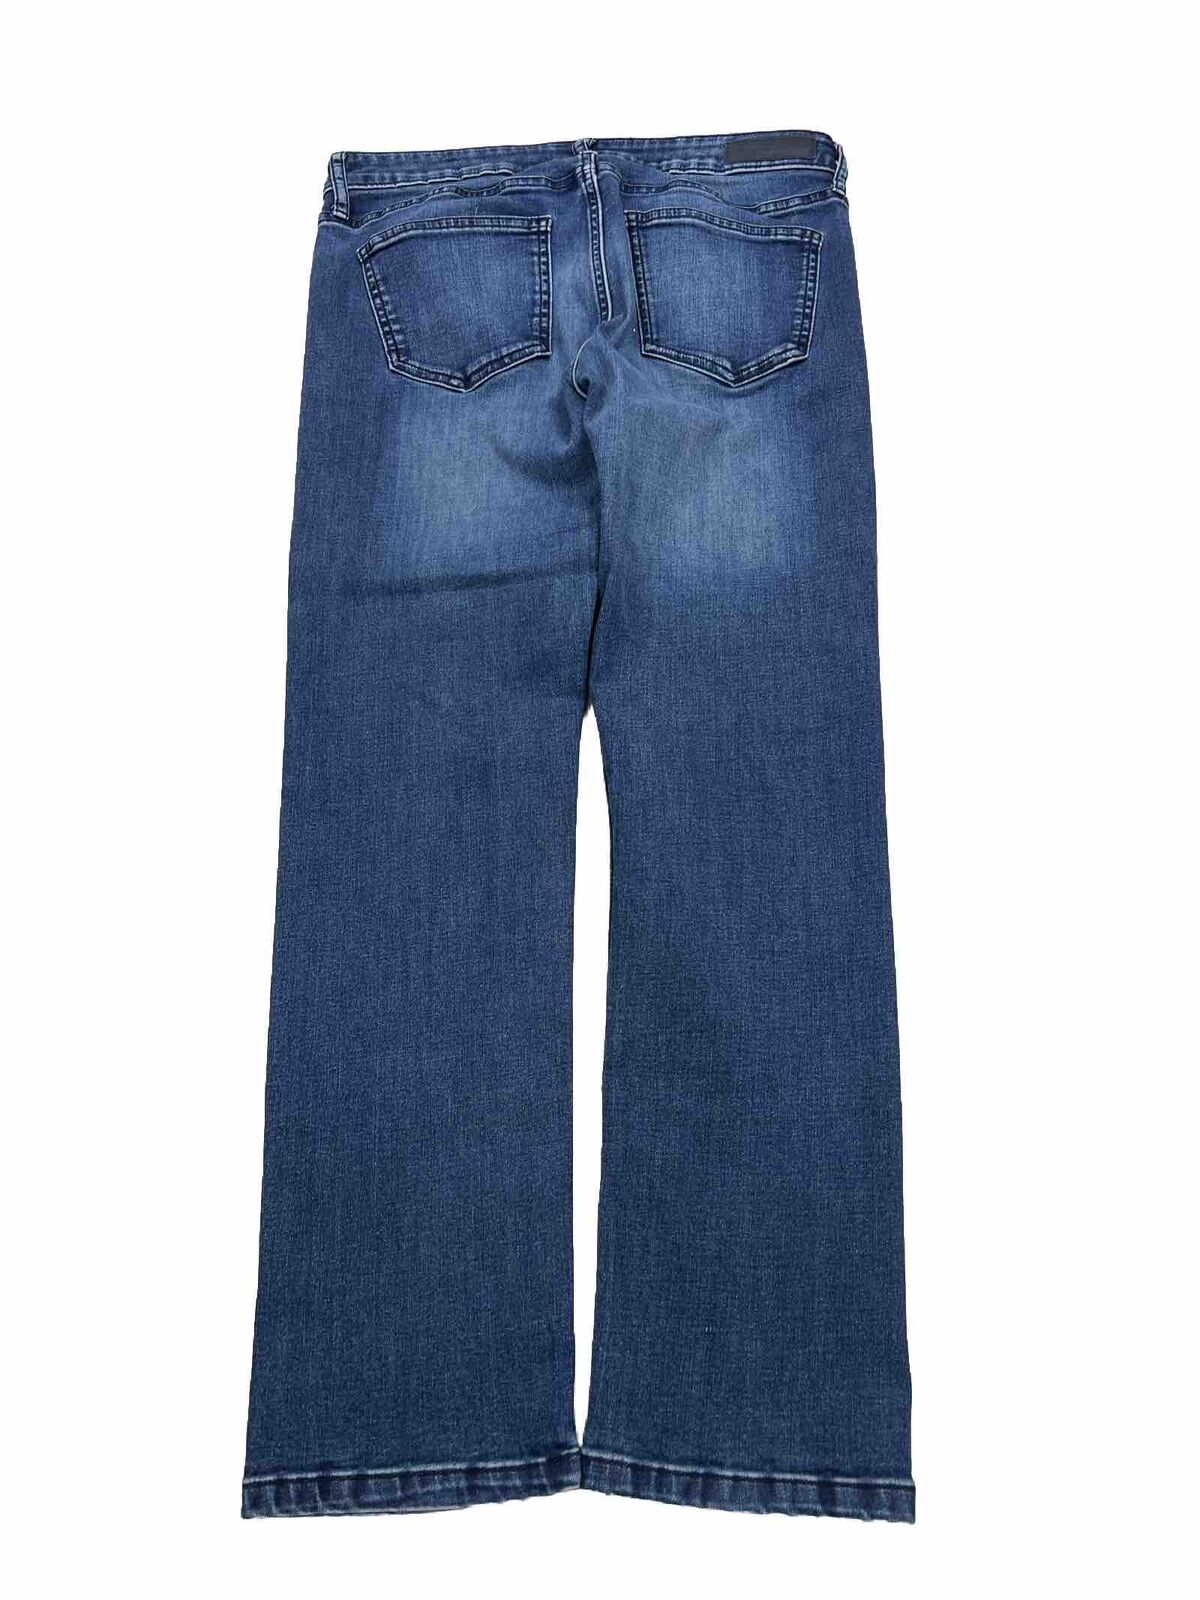 Calvin Klein Women's Medium Wash Slim Boyfriend Jeans - 6